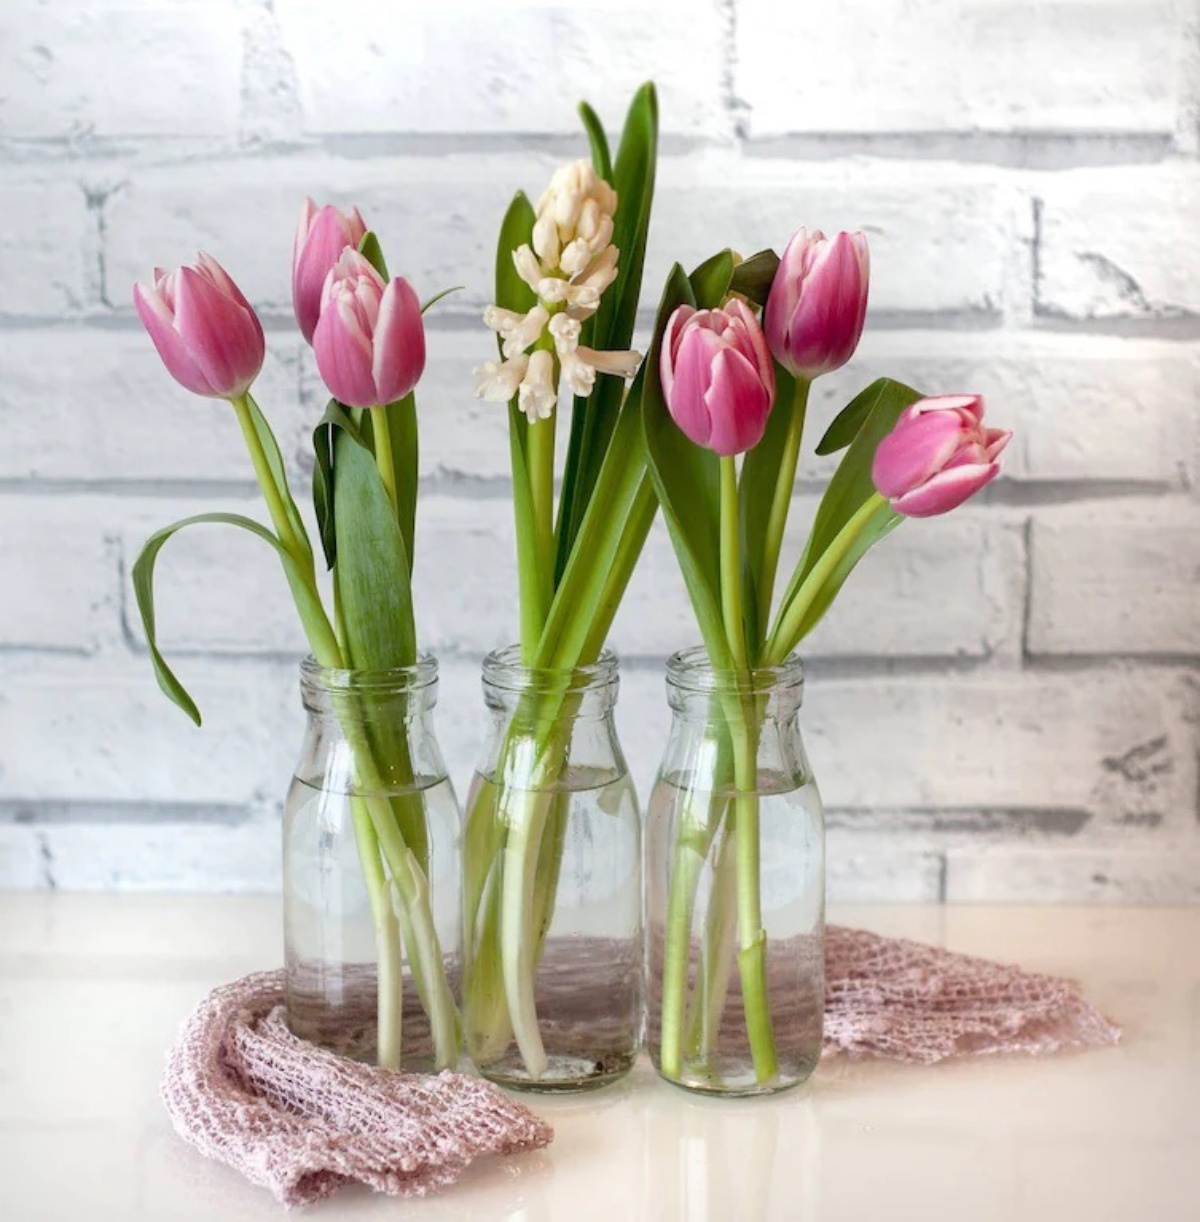 Trucchi per far durare i tulipani in vaso il più tempo possibile!